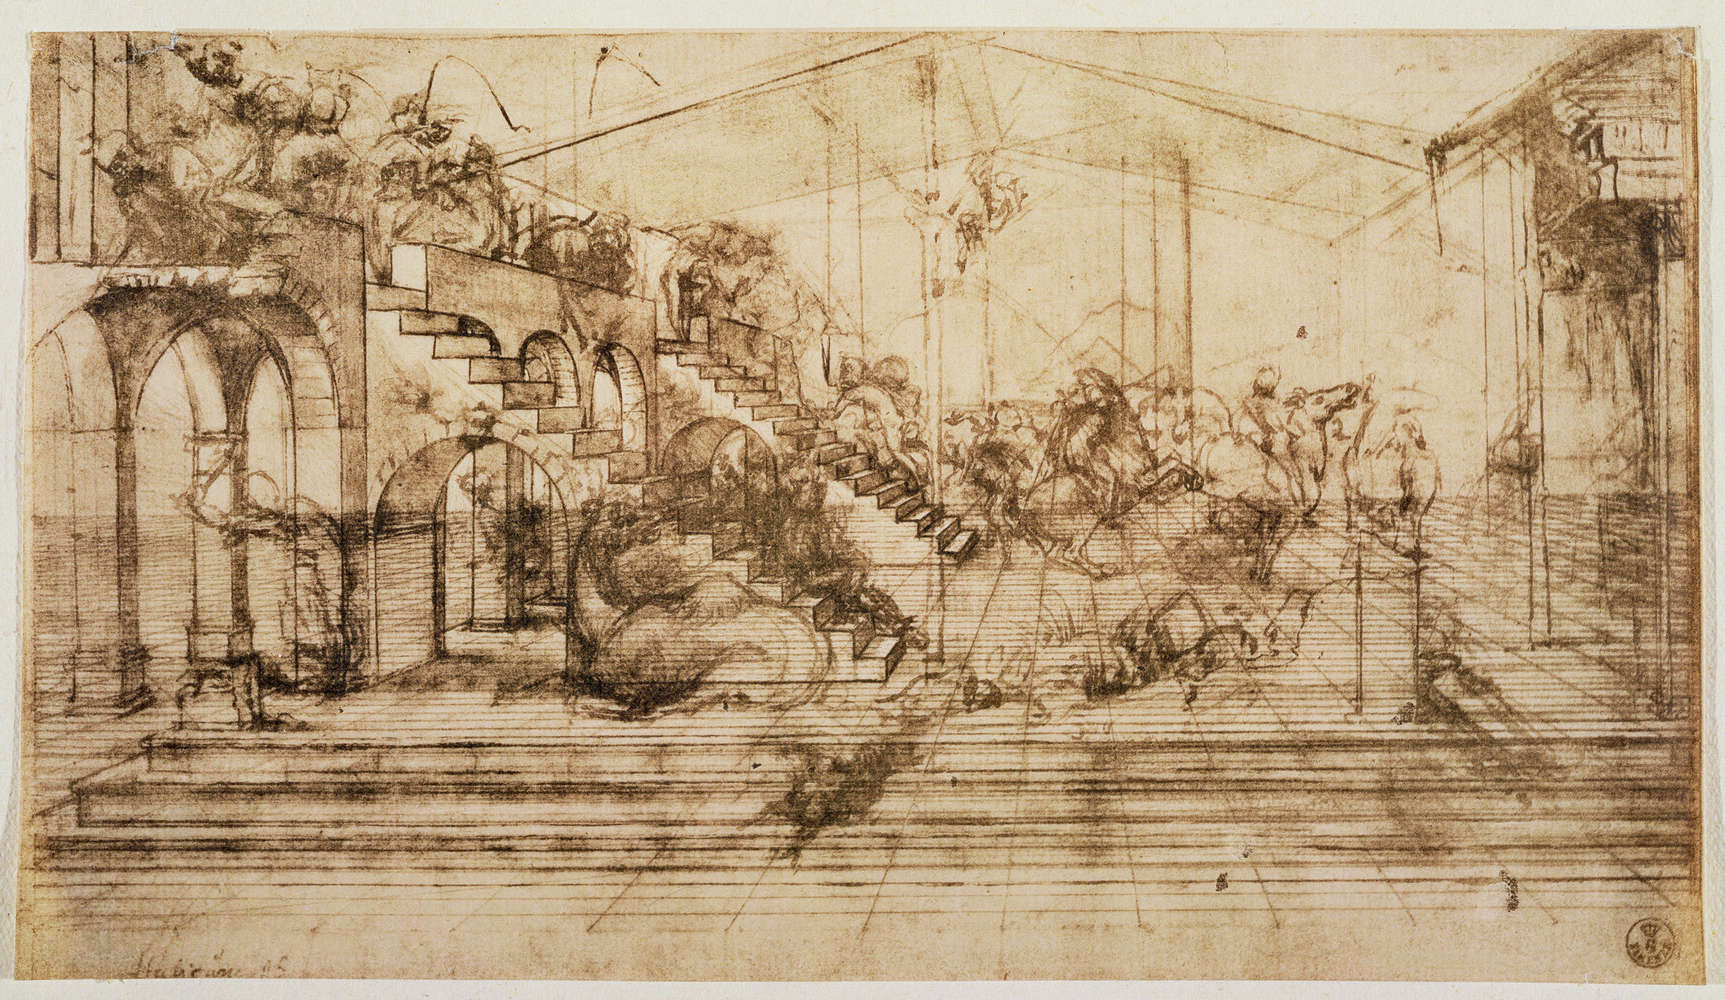             Papier peint "Etude de perspective pour le fond de l'Adoration des Mages" de Léonard de Vinci
        